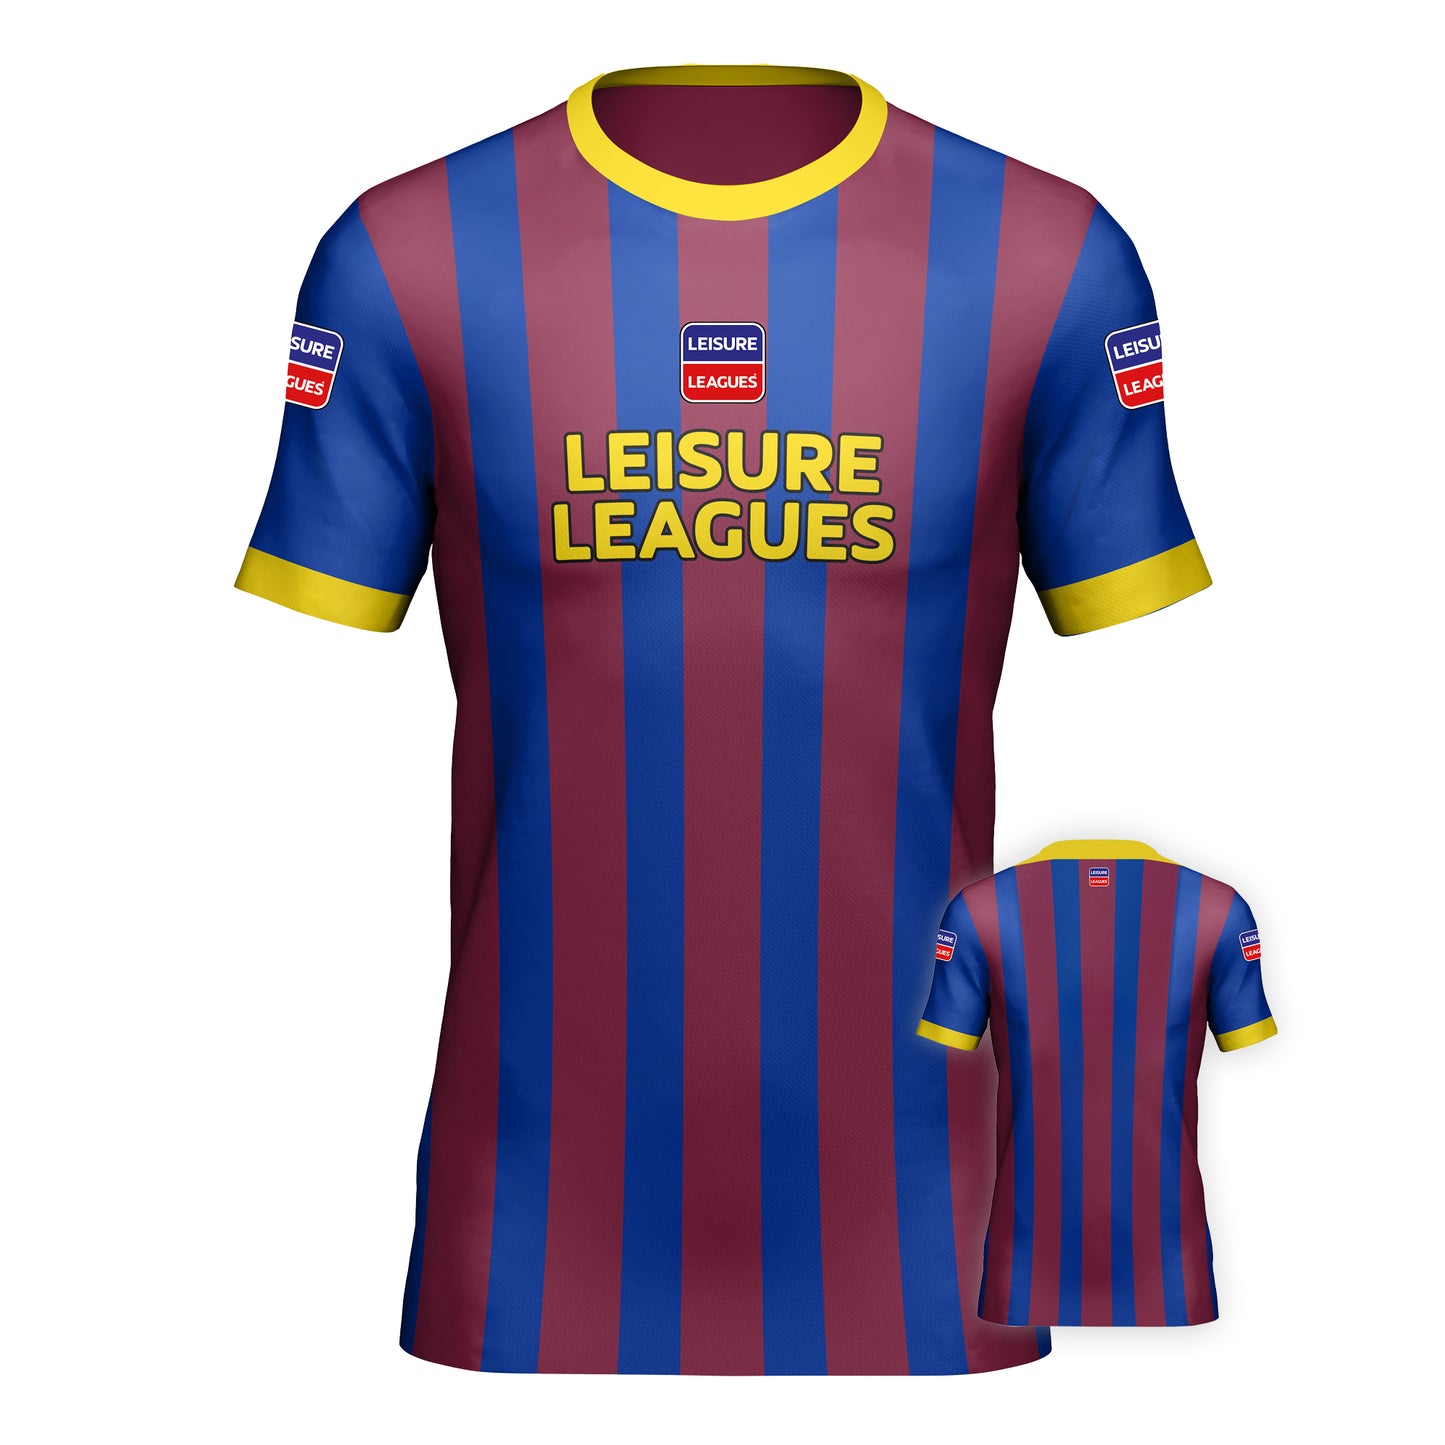 Football Shirt Leisure Leagues Kit Team Tshirt Barca Claret & Blue